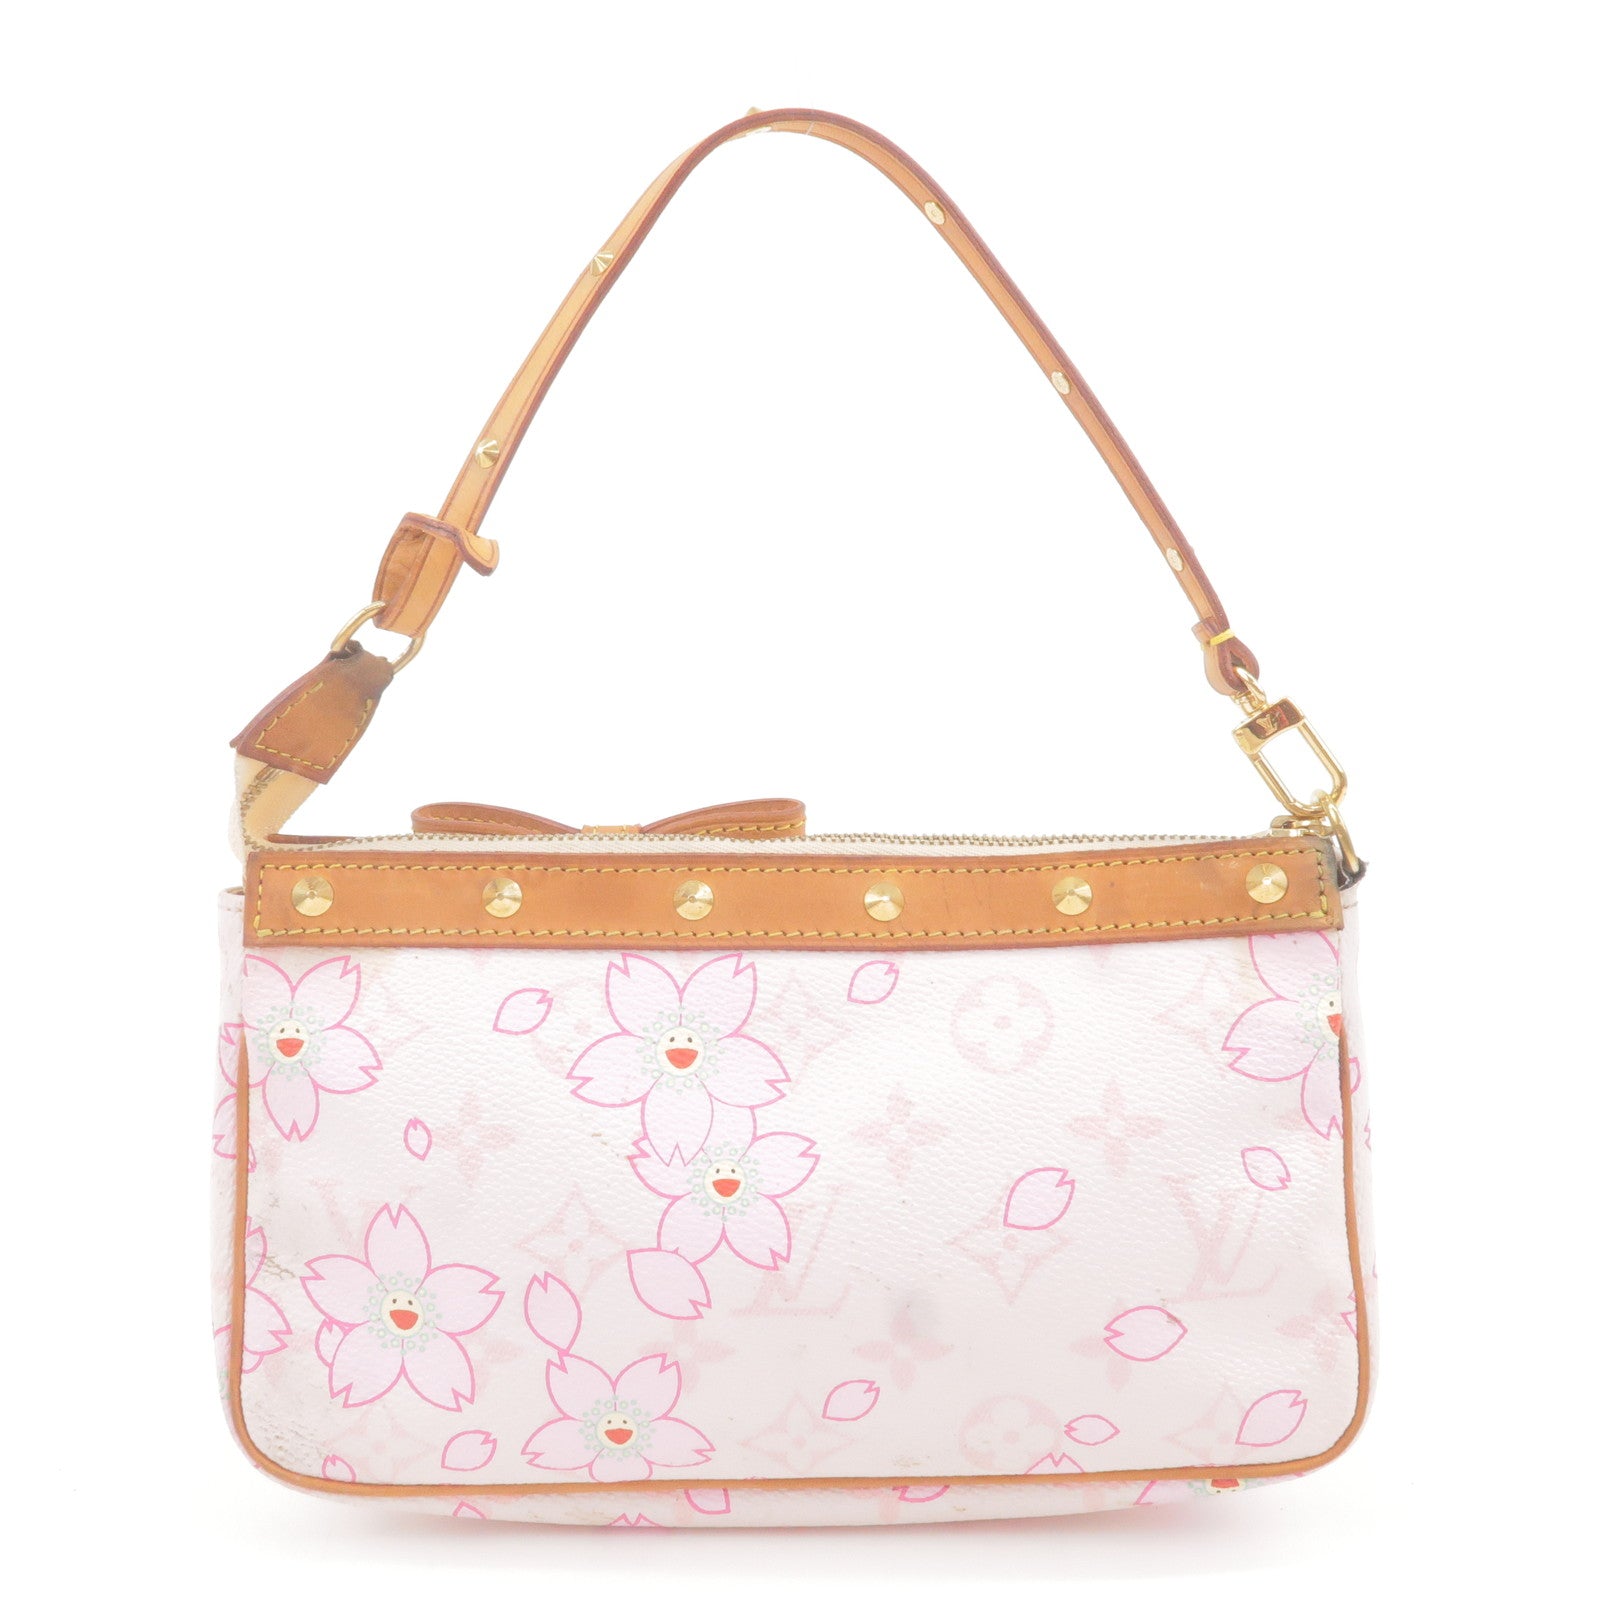 Louis Vuitton 2003 pre-owned Cherry Blossom monogram handbag